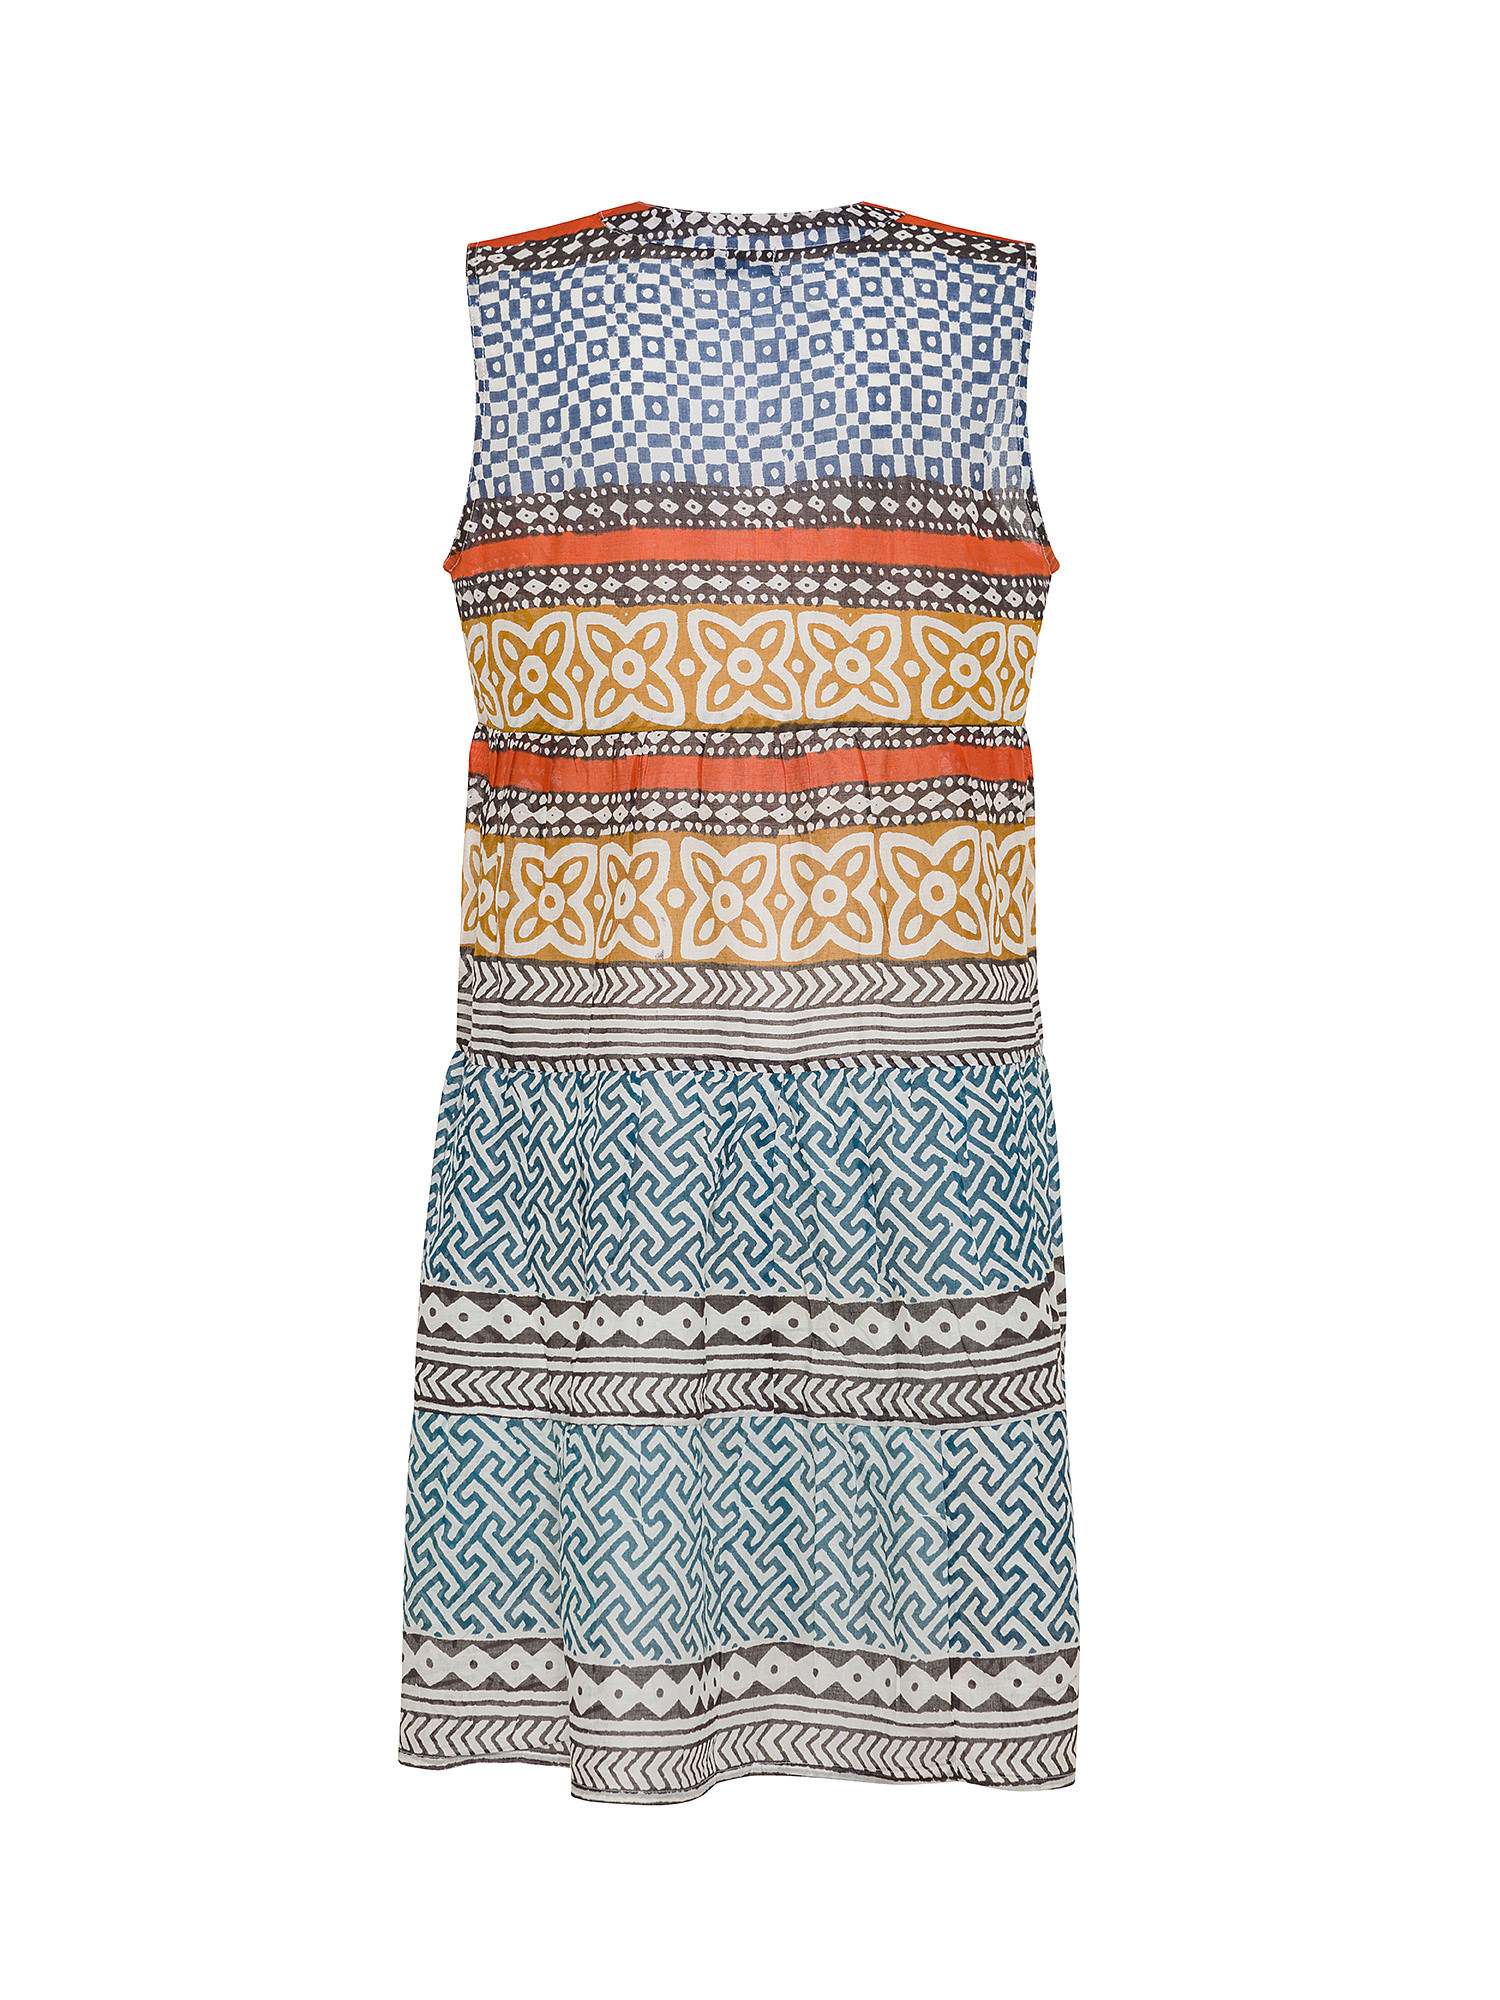 Koan - Patterned cotton dress, Blue, large image number 1